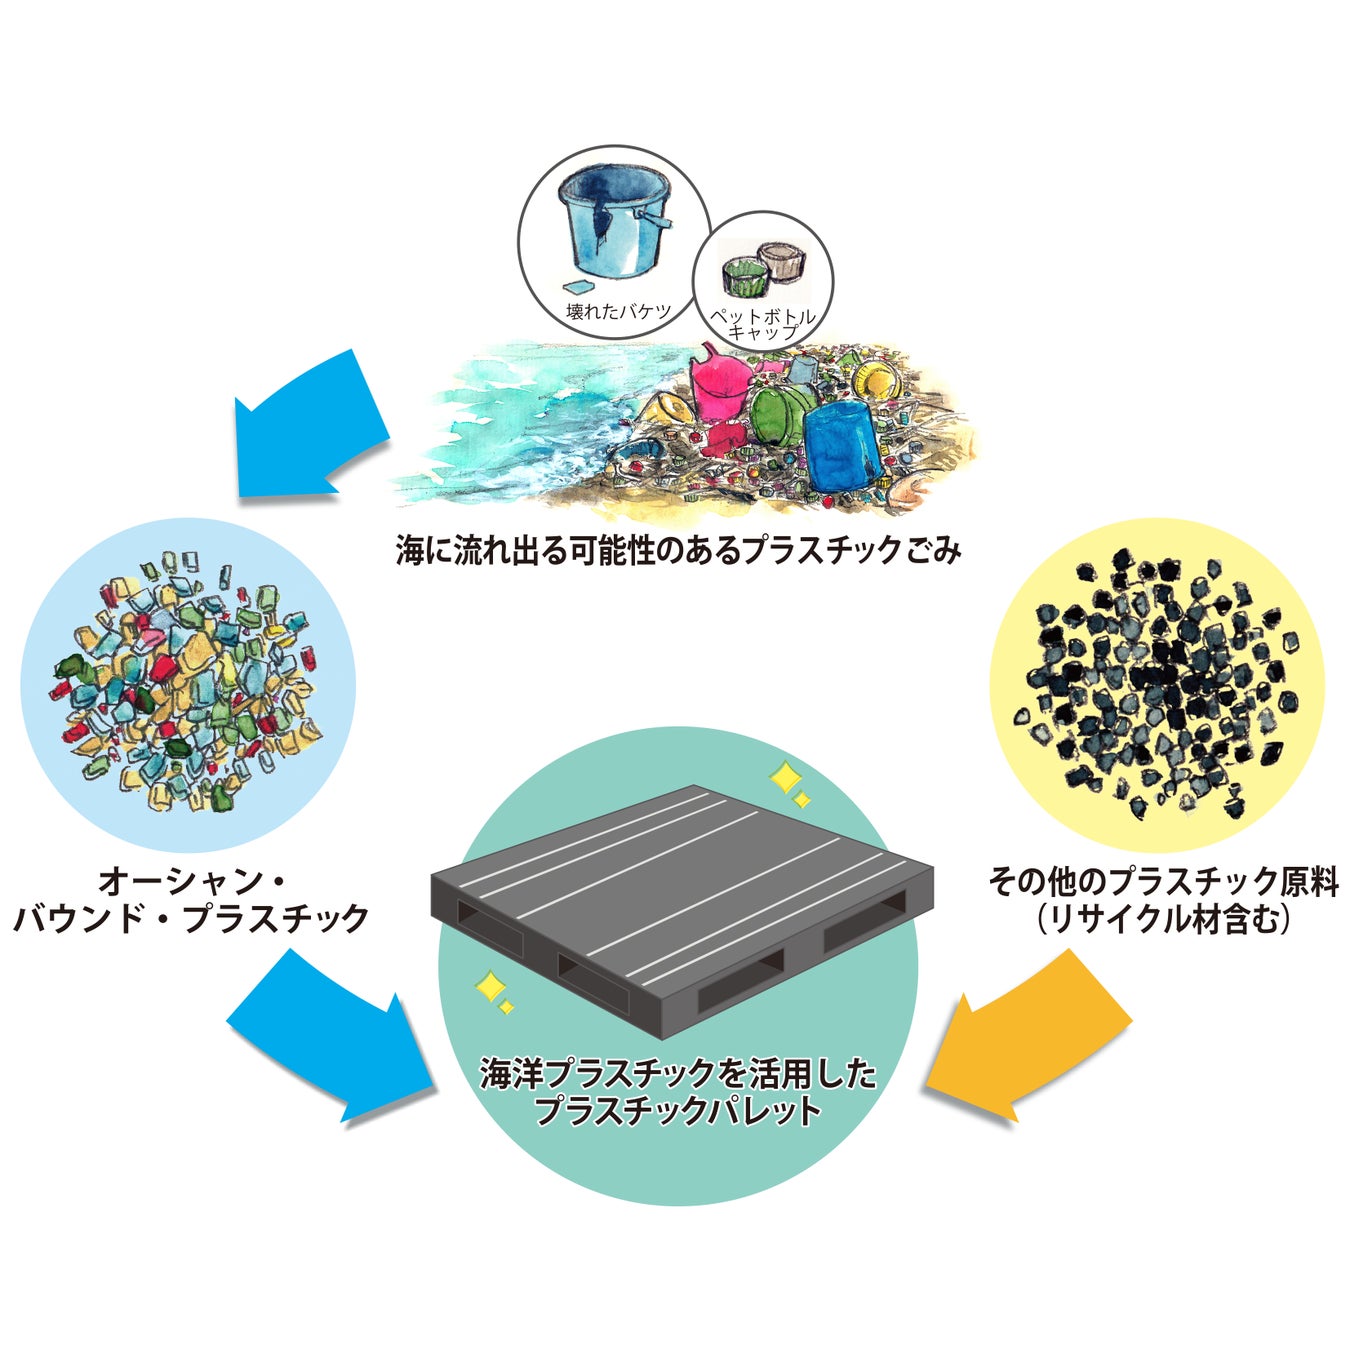 化粧品業界初・製品の輸送に使用する物流資材として海洋プラスチックをアップサイクルしたリサイクルパレットを導入のサブ画像1